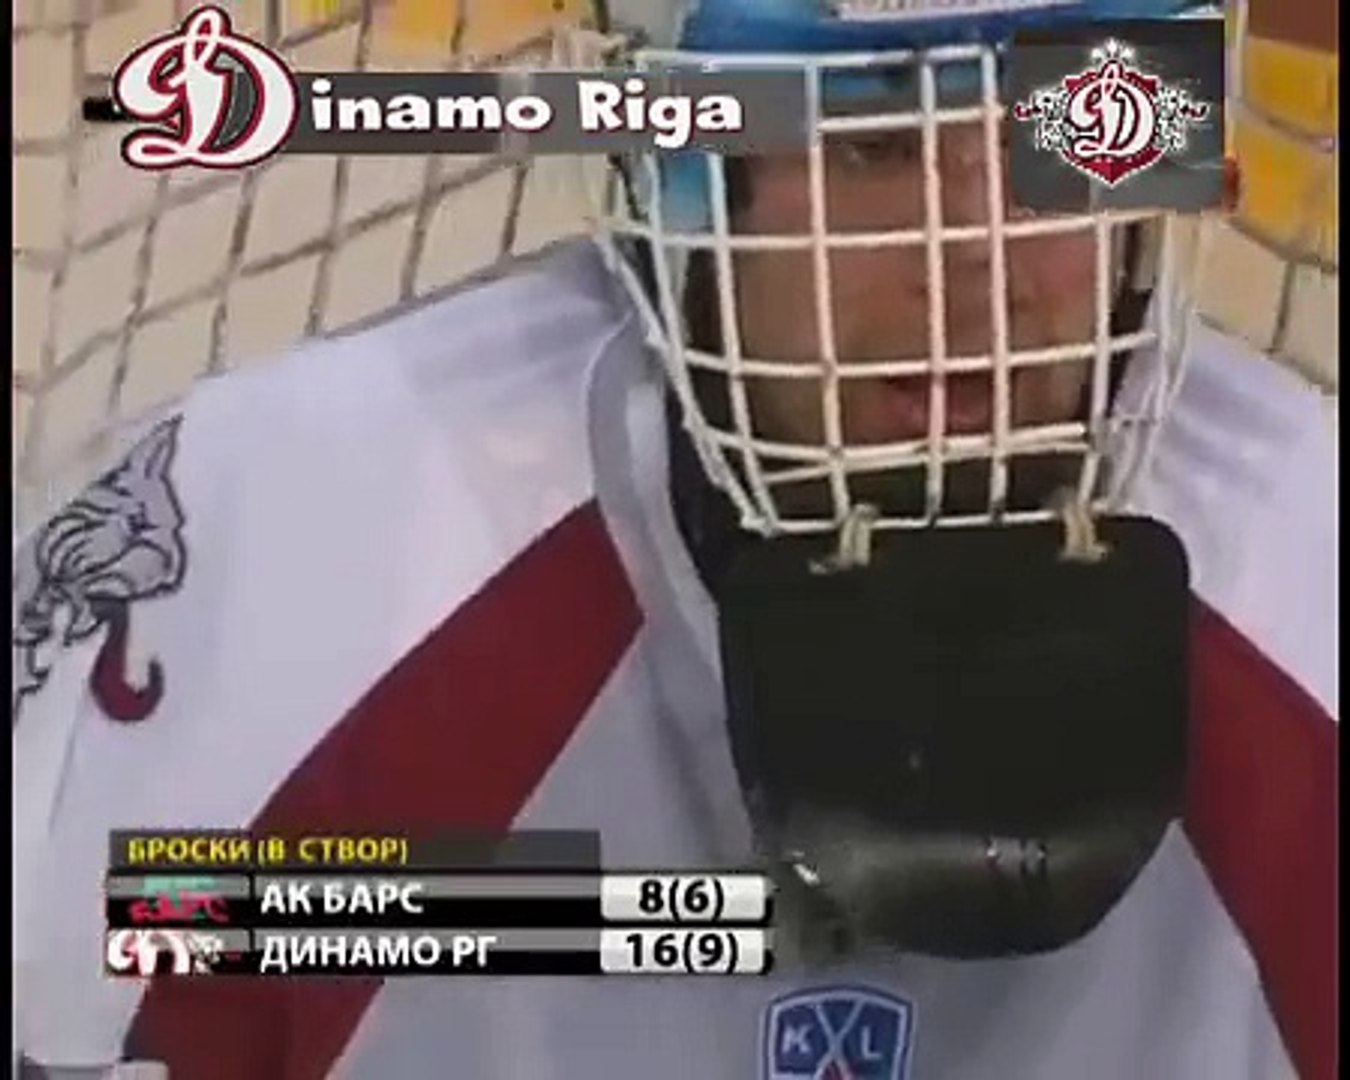 Dinamo Riga himna.avi - video Dailymotion